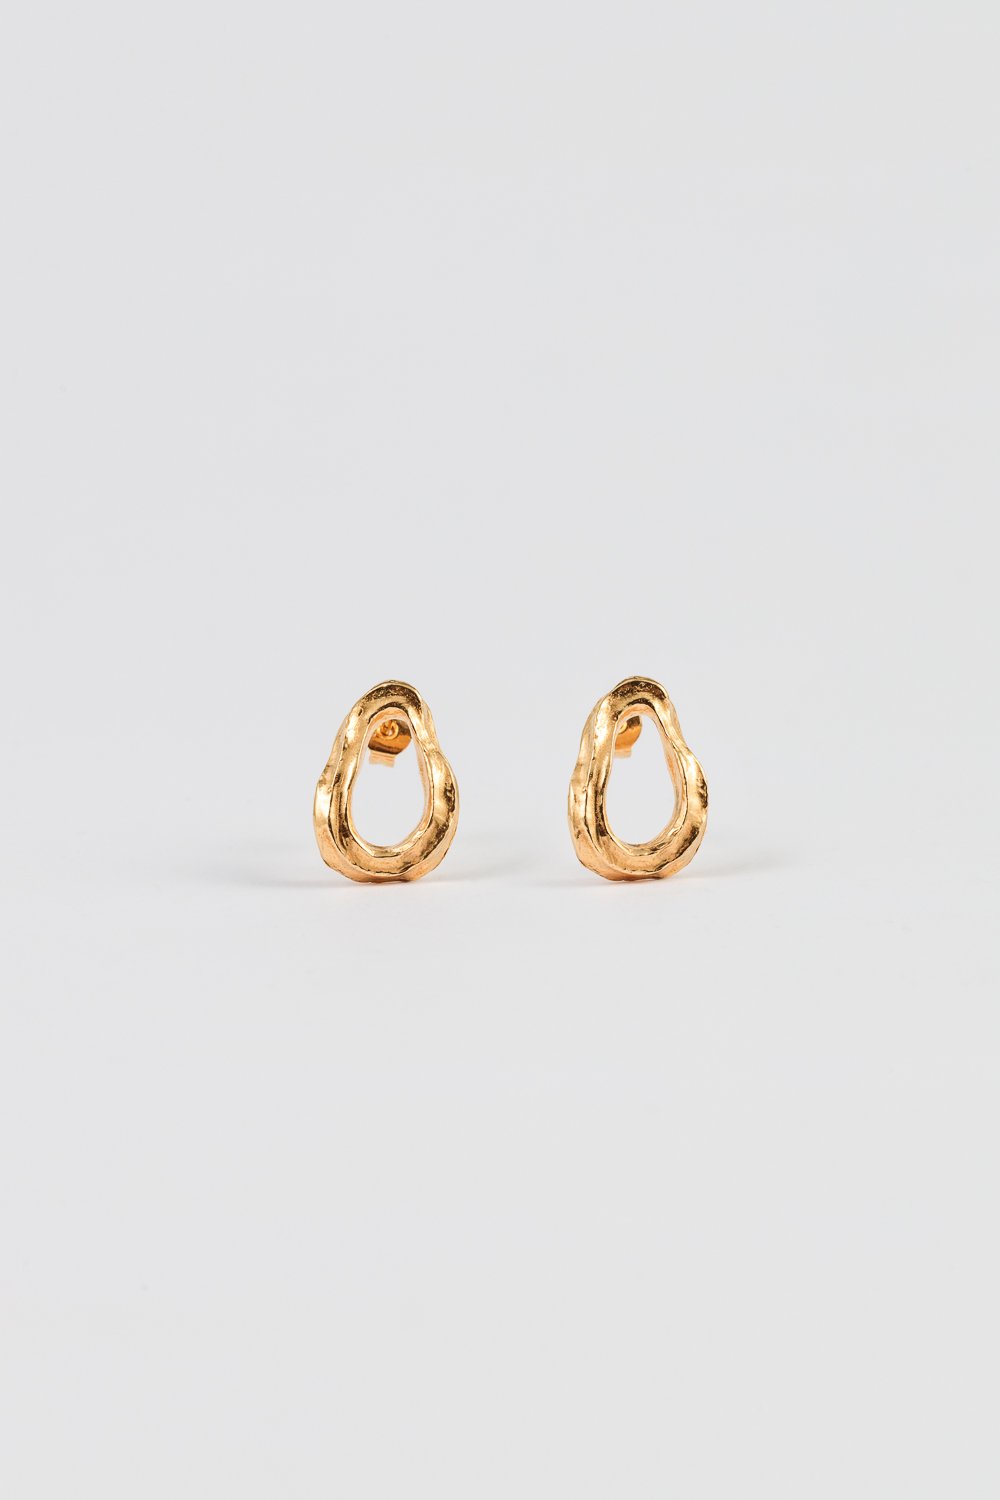 Image of ovata earrings